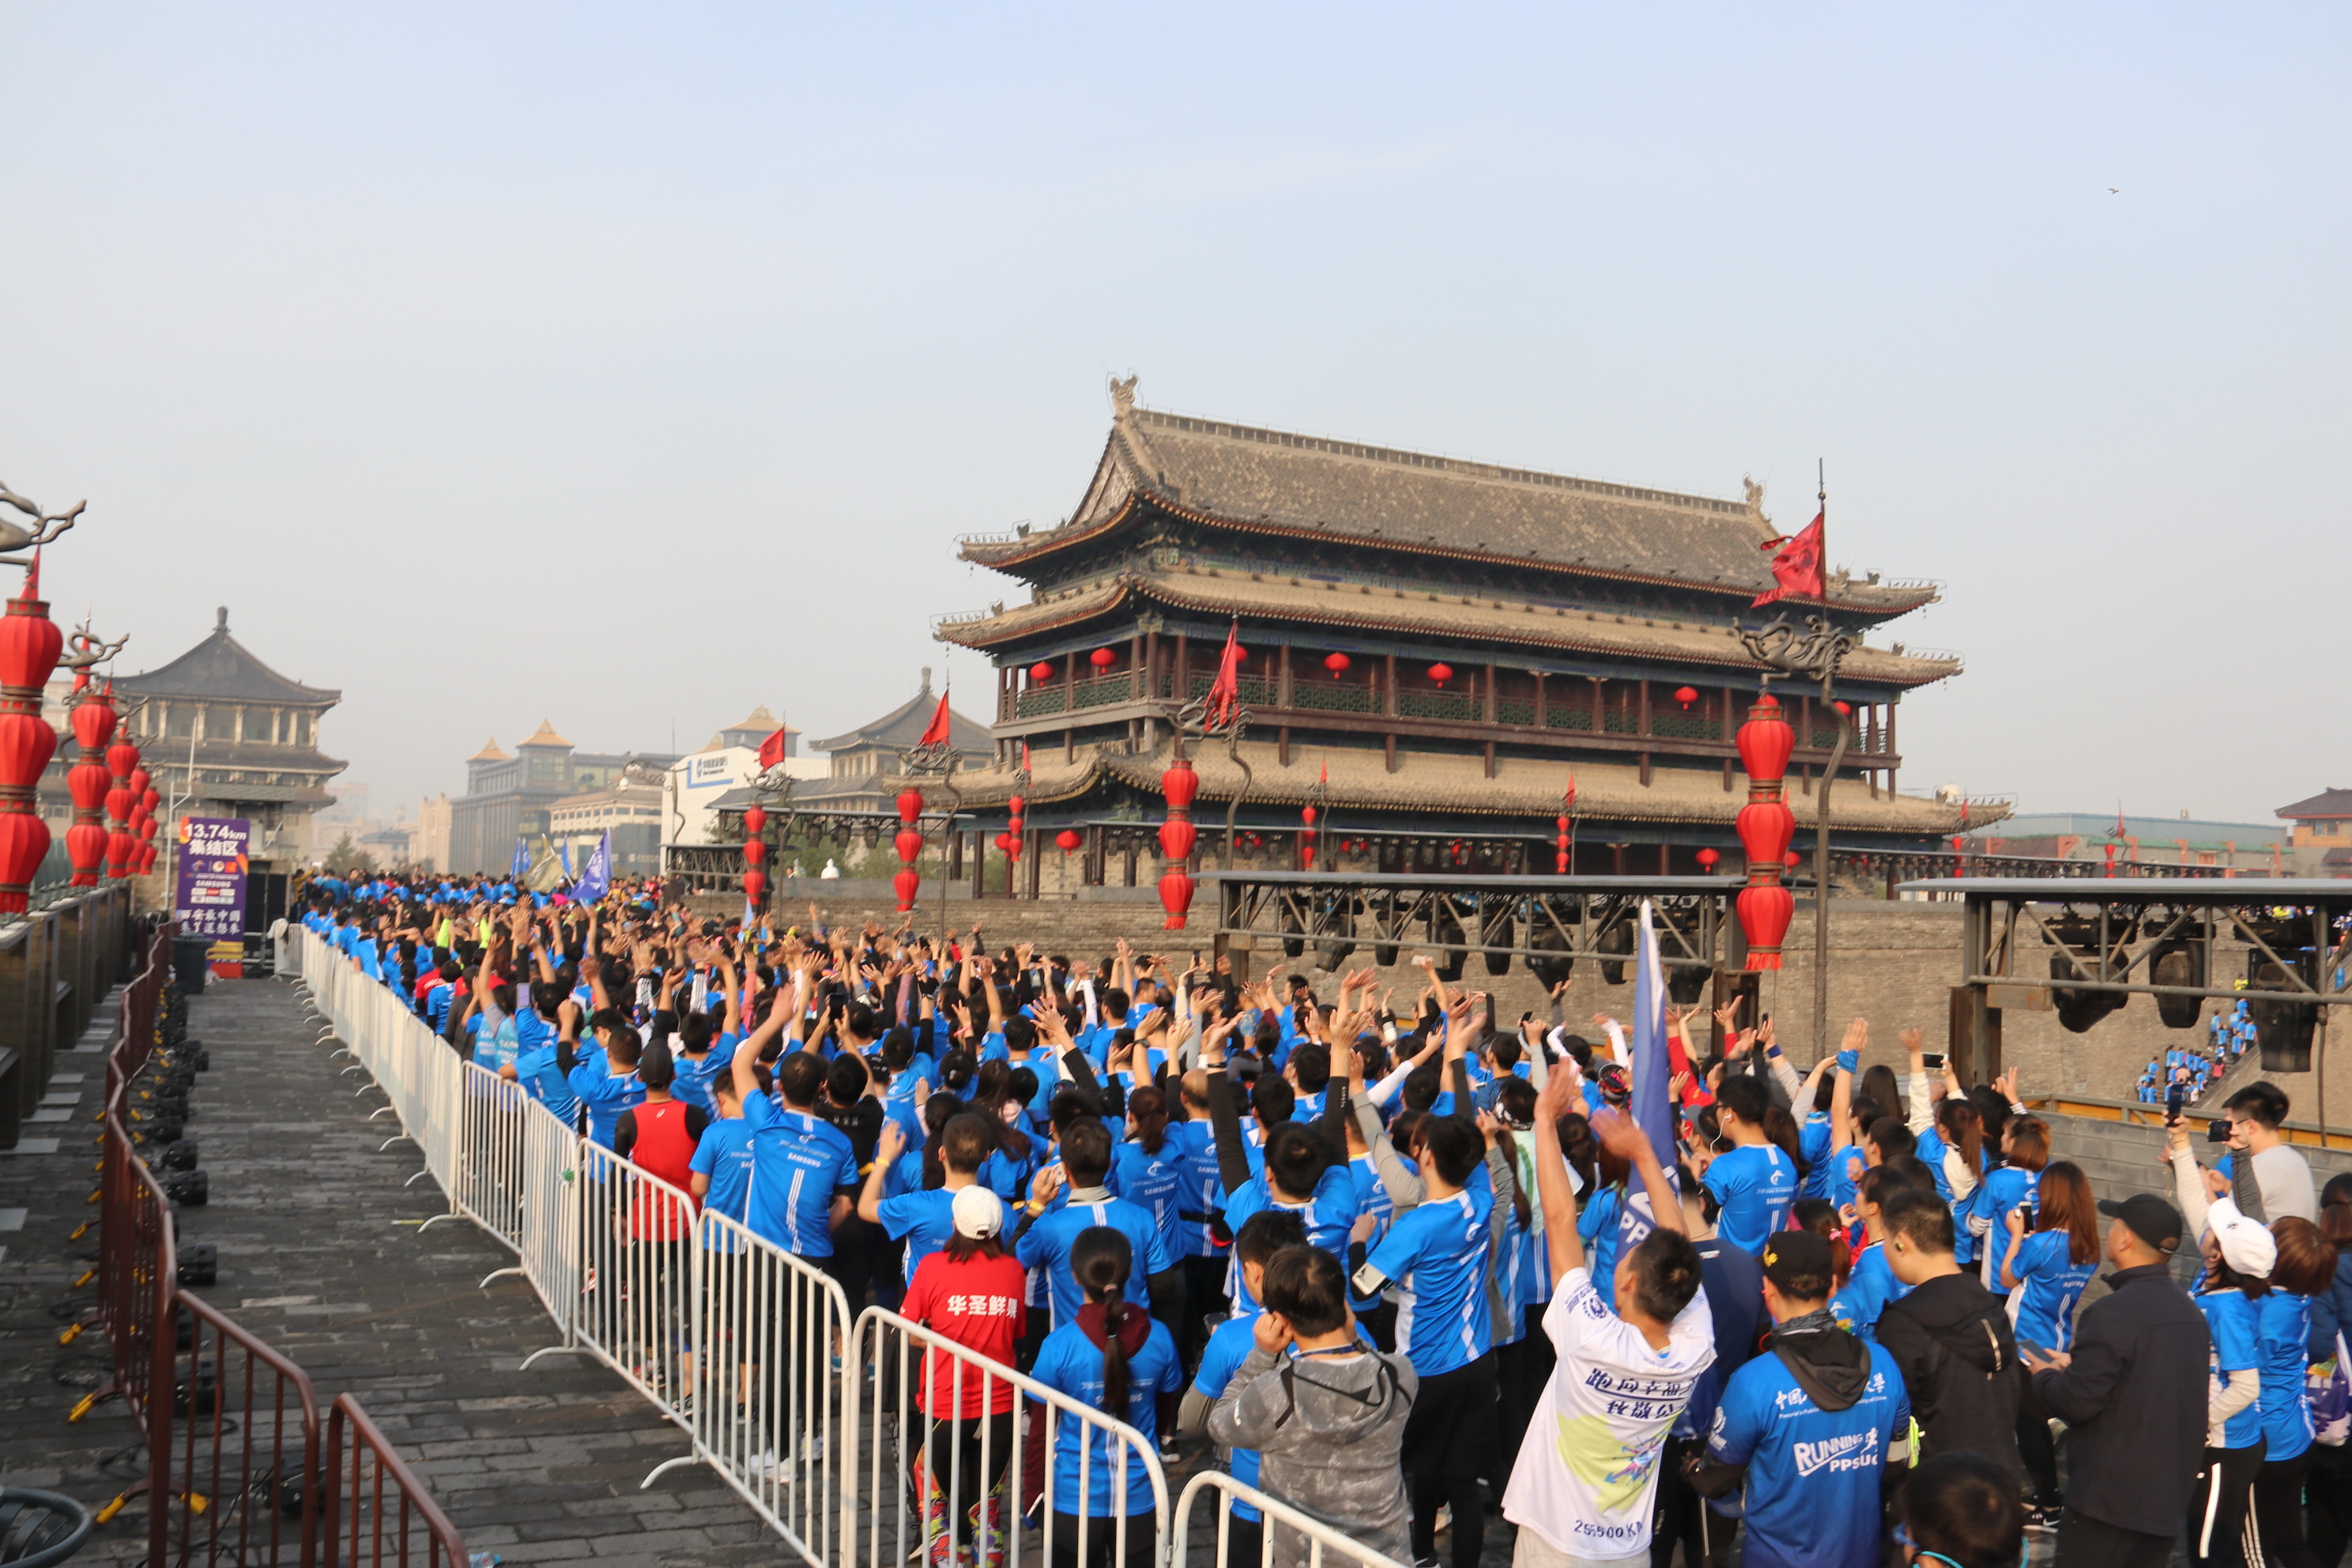 雷行记:西安秋季城墙马拉松,选手感受千年历史文化